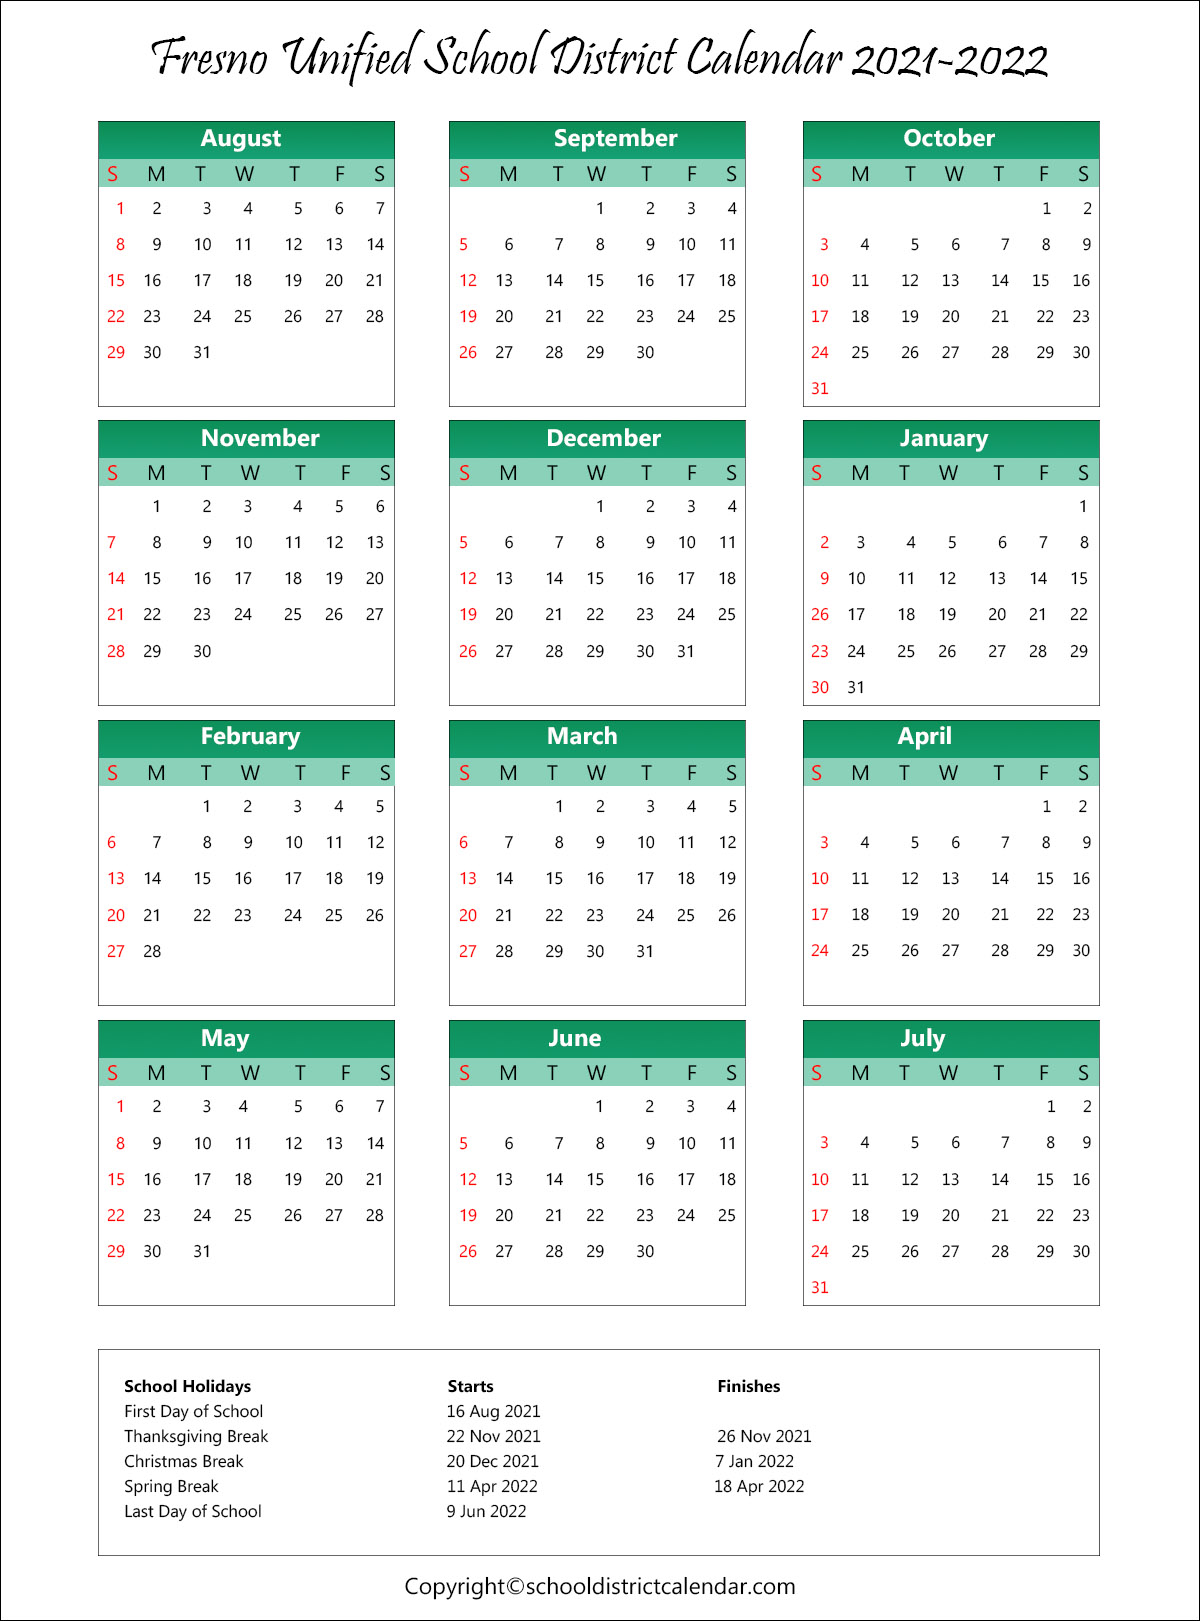 Fresno State Fall 2022 Calendar Fresno Unified School District Calendar Holidays 2021-2022